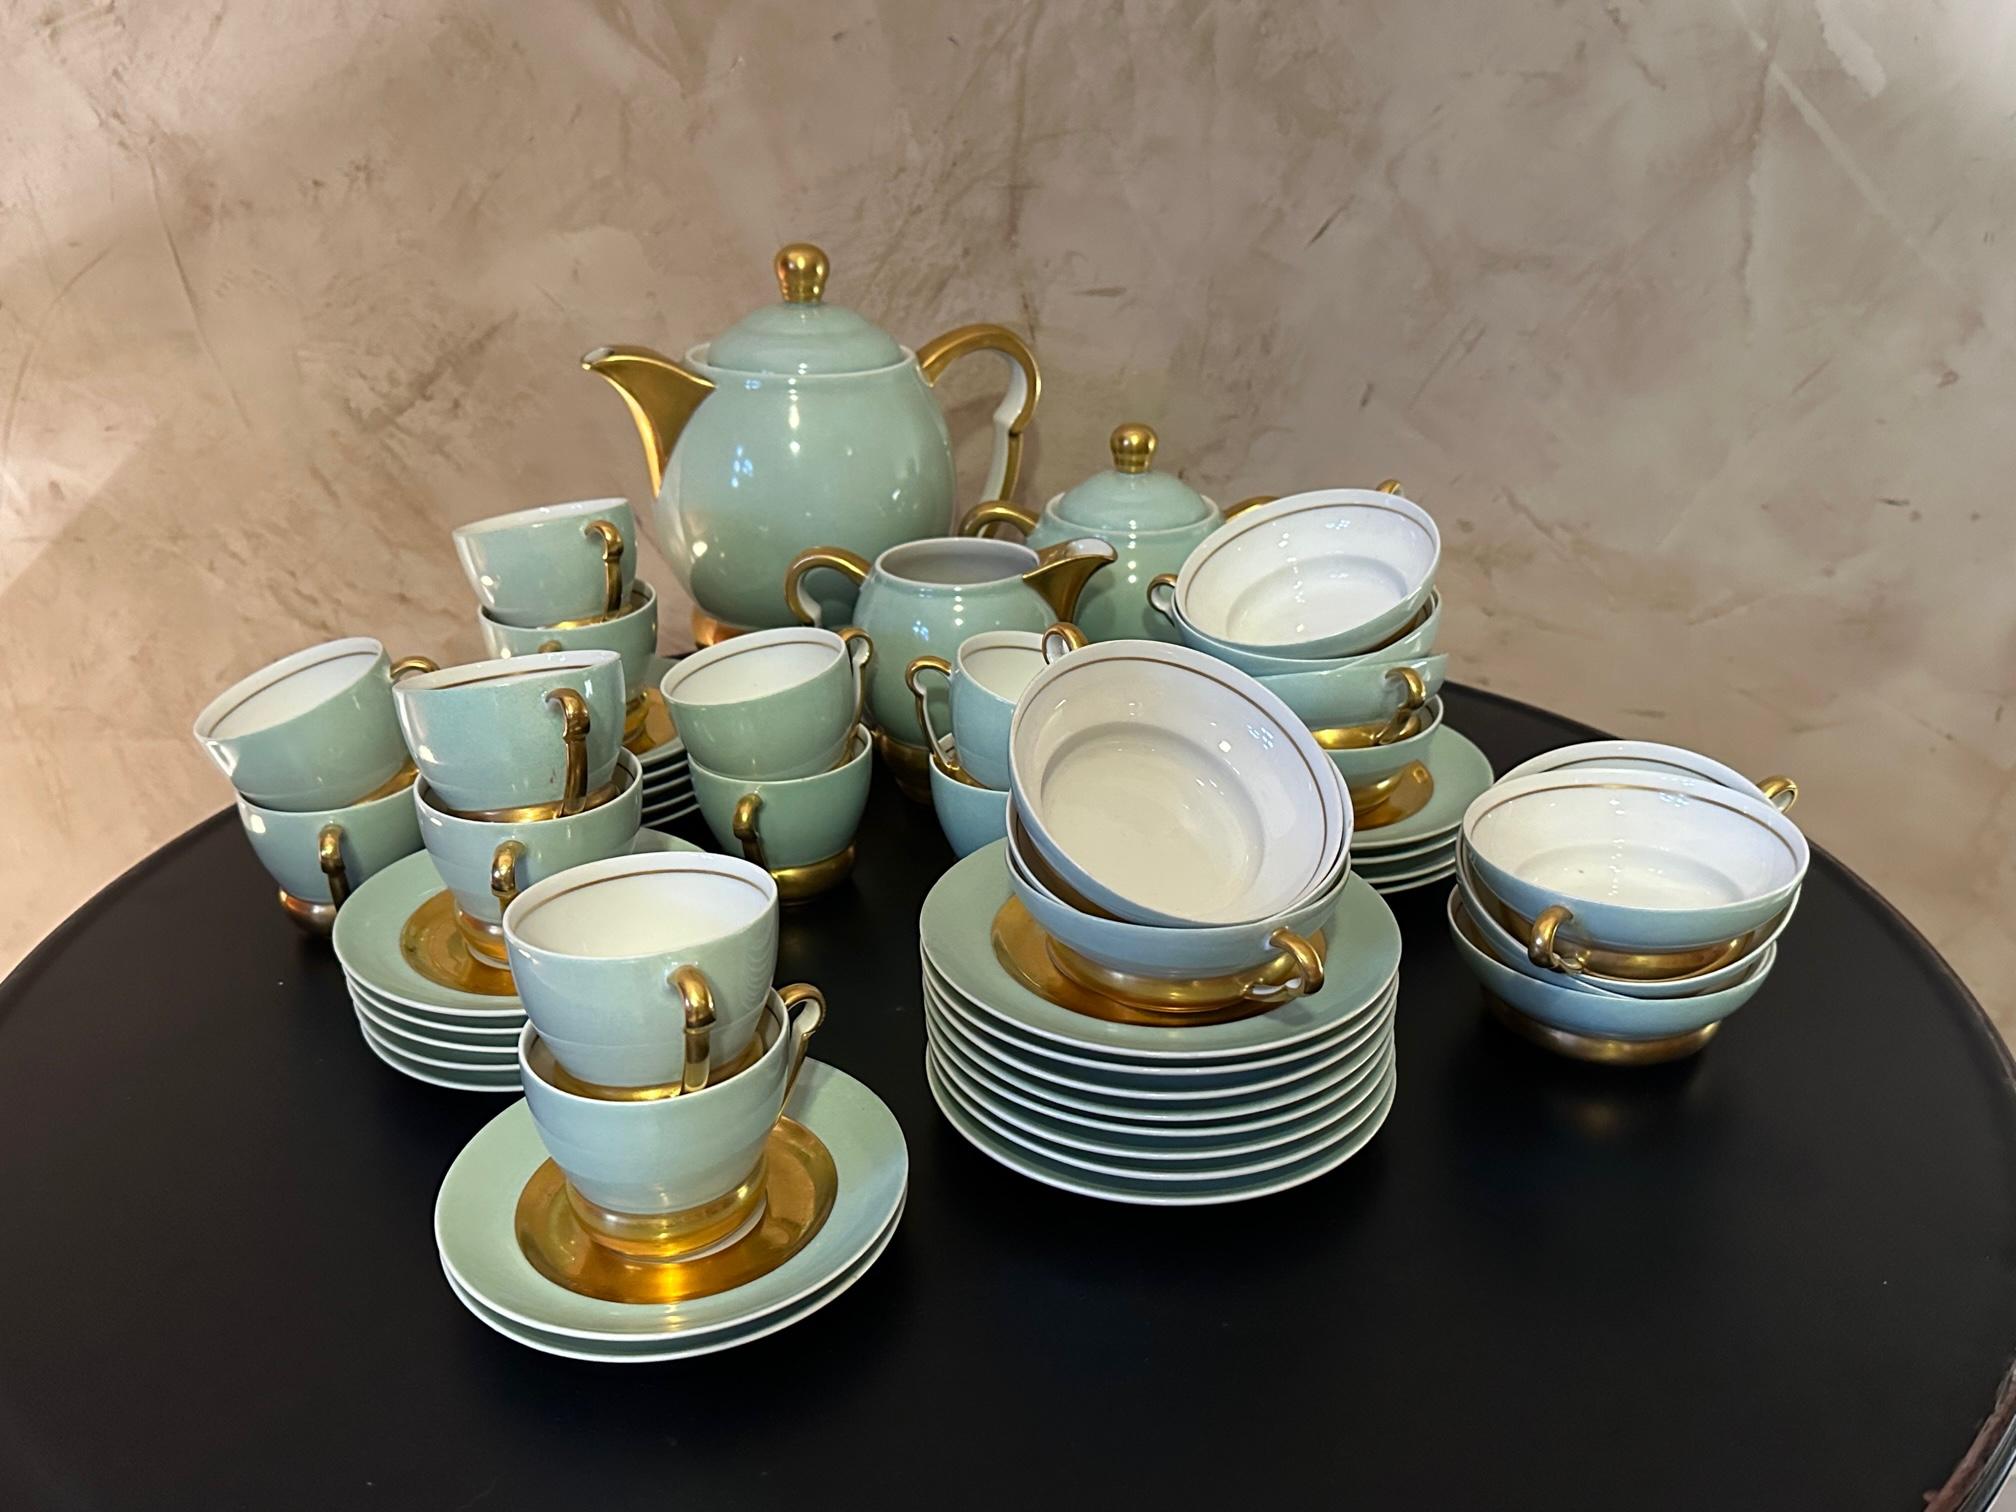 Beau service à café et à thé des années 1930 en porcelaine de Limoges par Raynaud (cachet sous chaque pièce), composé d'une théière, d'un pot à lait, d'un sucrier, de 12 tasses à café et leurs soucoupes et de 12 tasses à thé et leurs soucoupes.